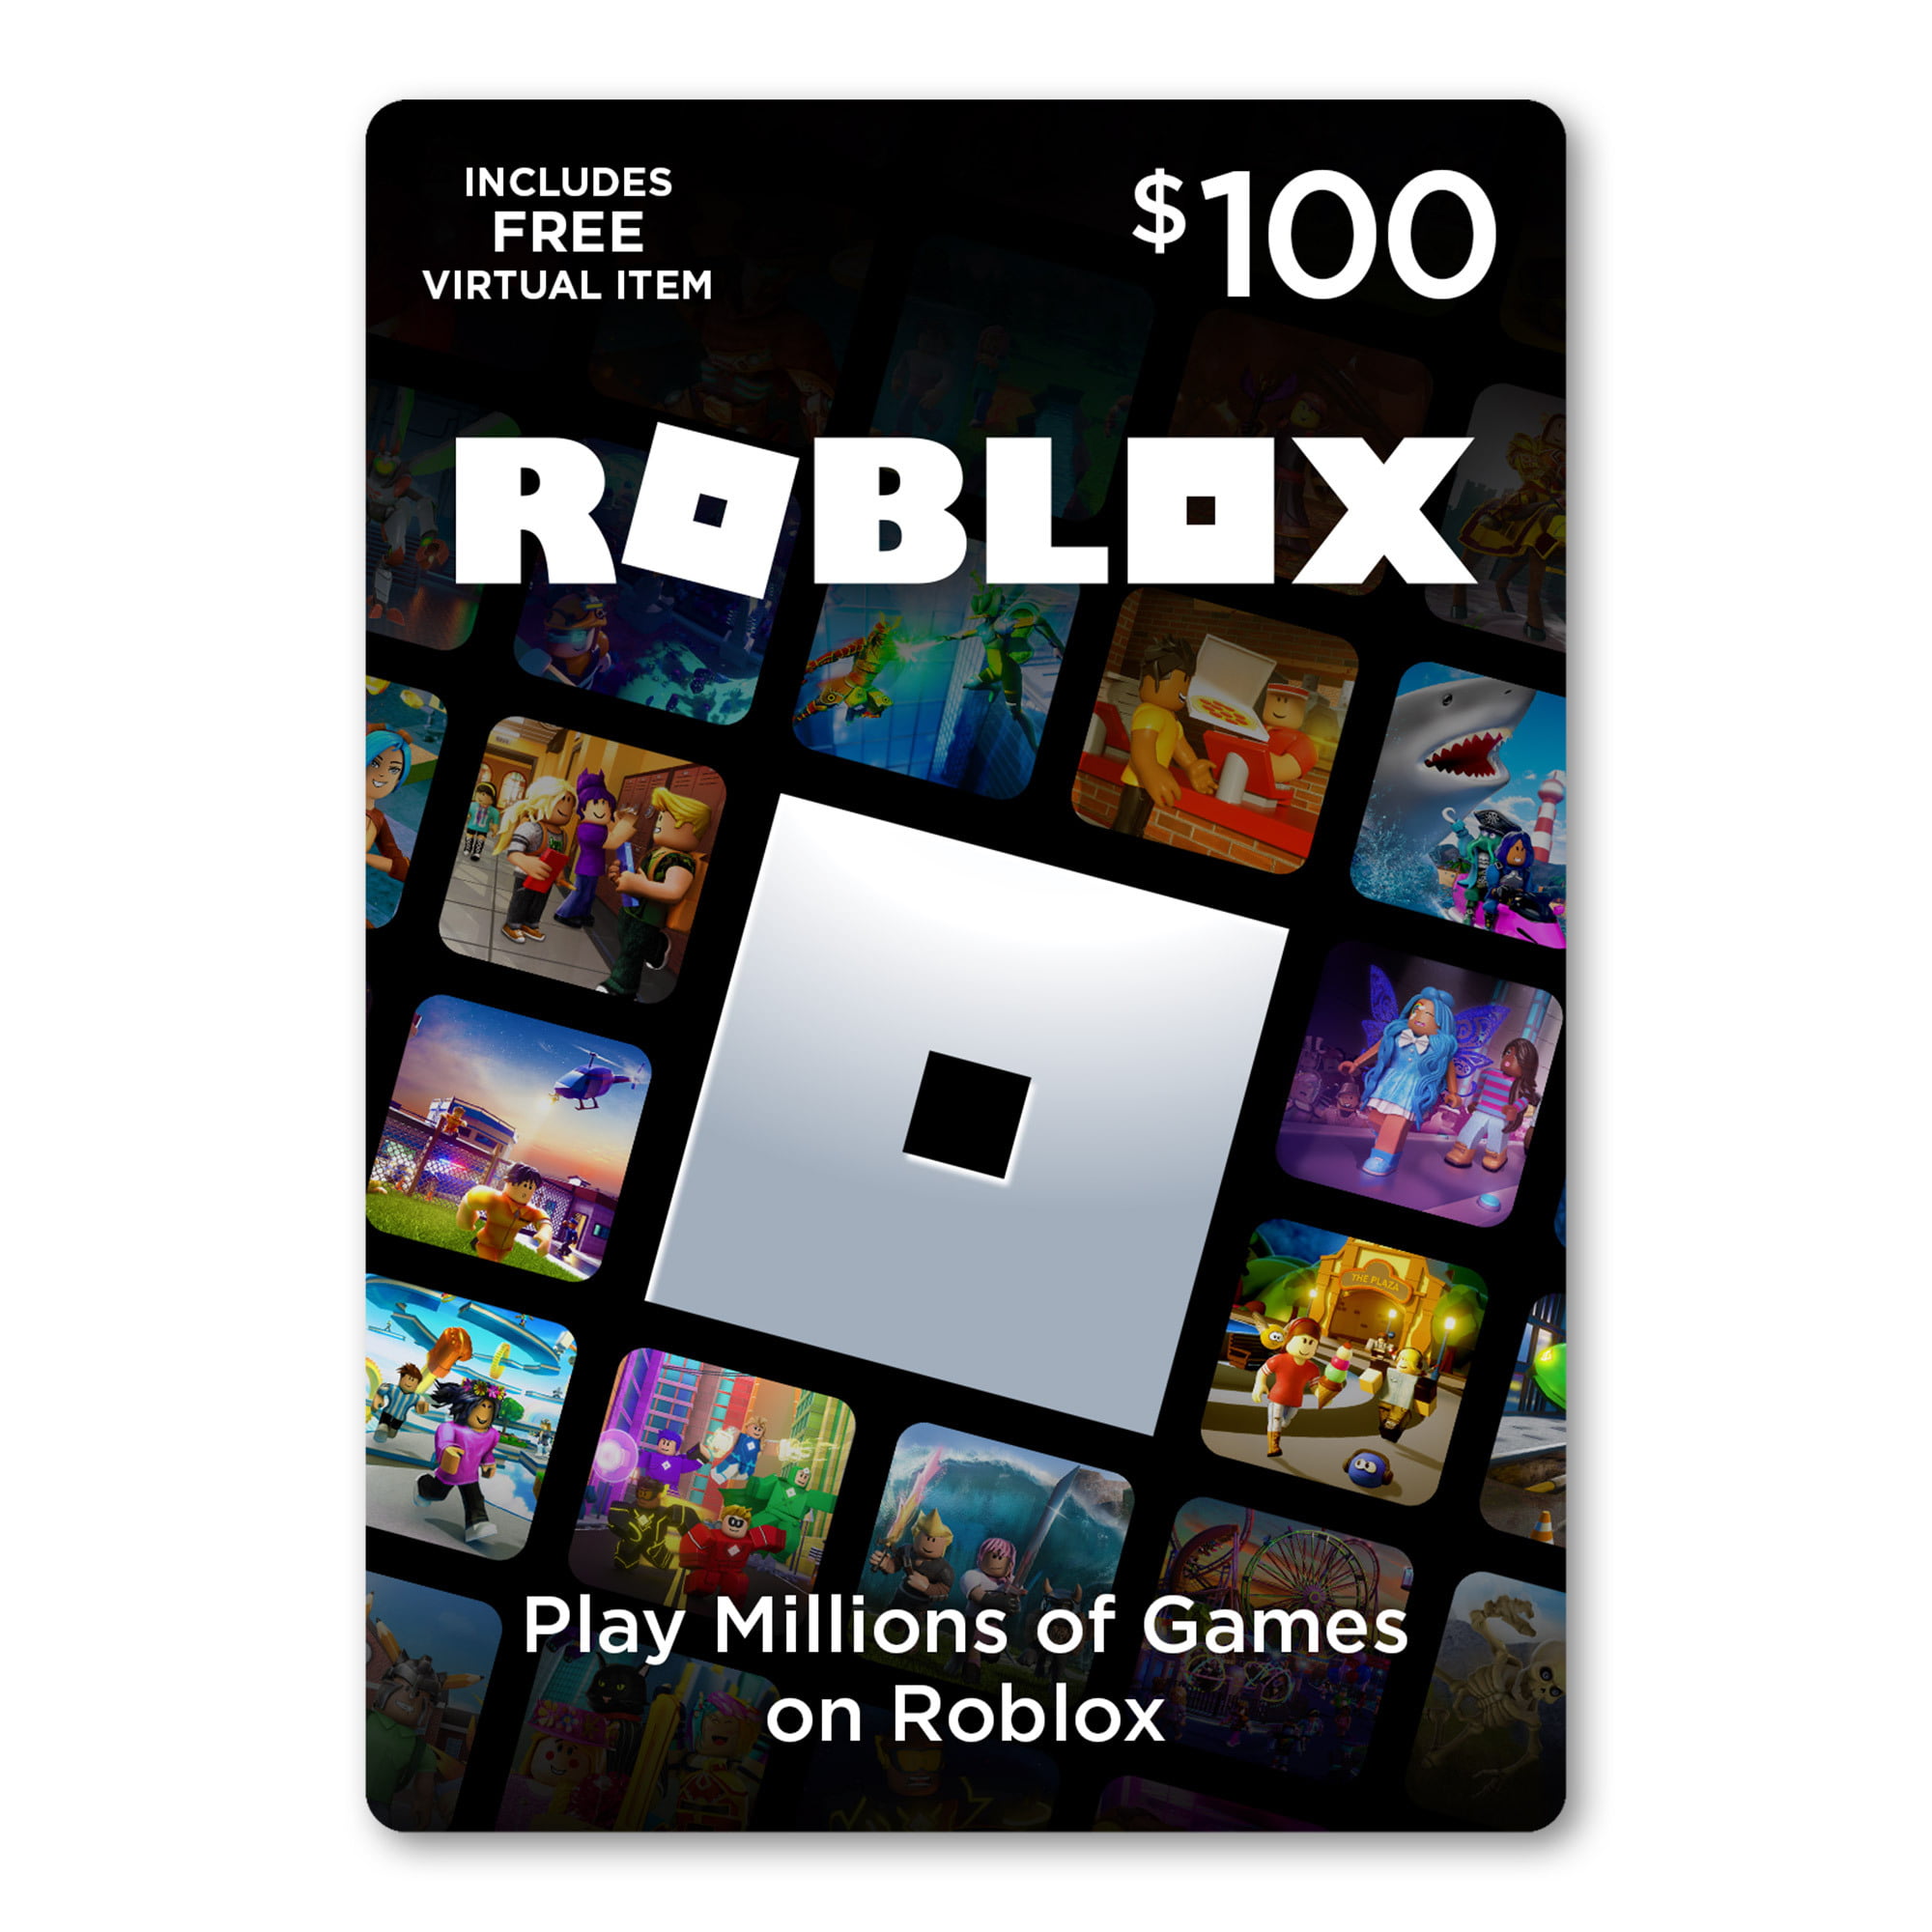 Roblox 100 Digital Gift Card Includes Exclusive Virtual Item Digital Download Walmart Com Walmart Com - roblox com upgrades robux